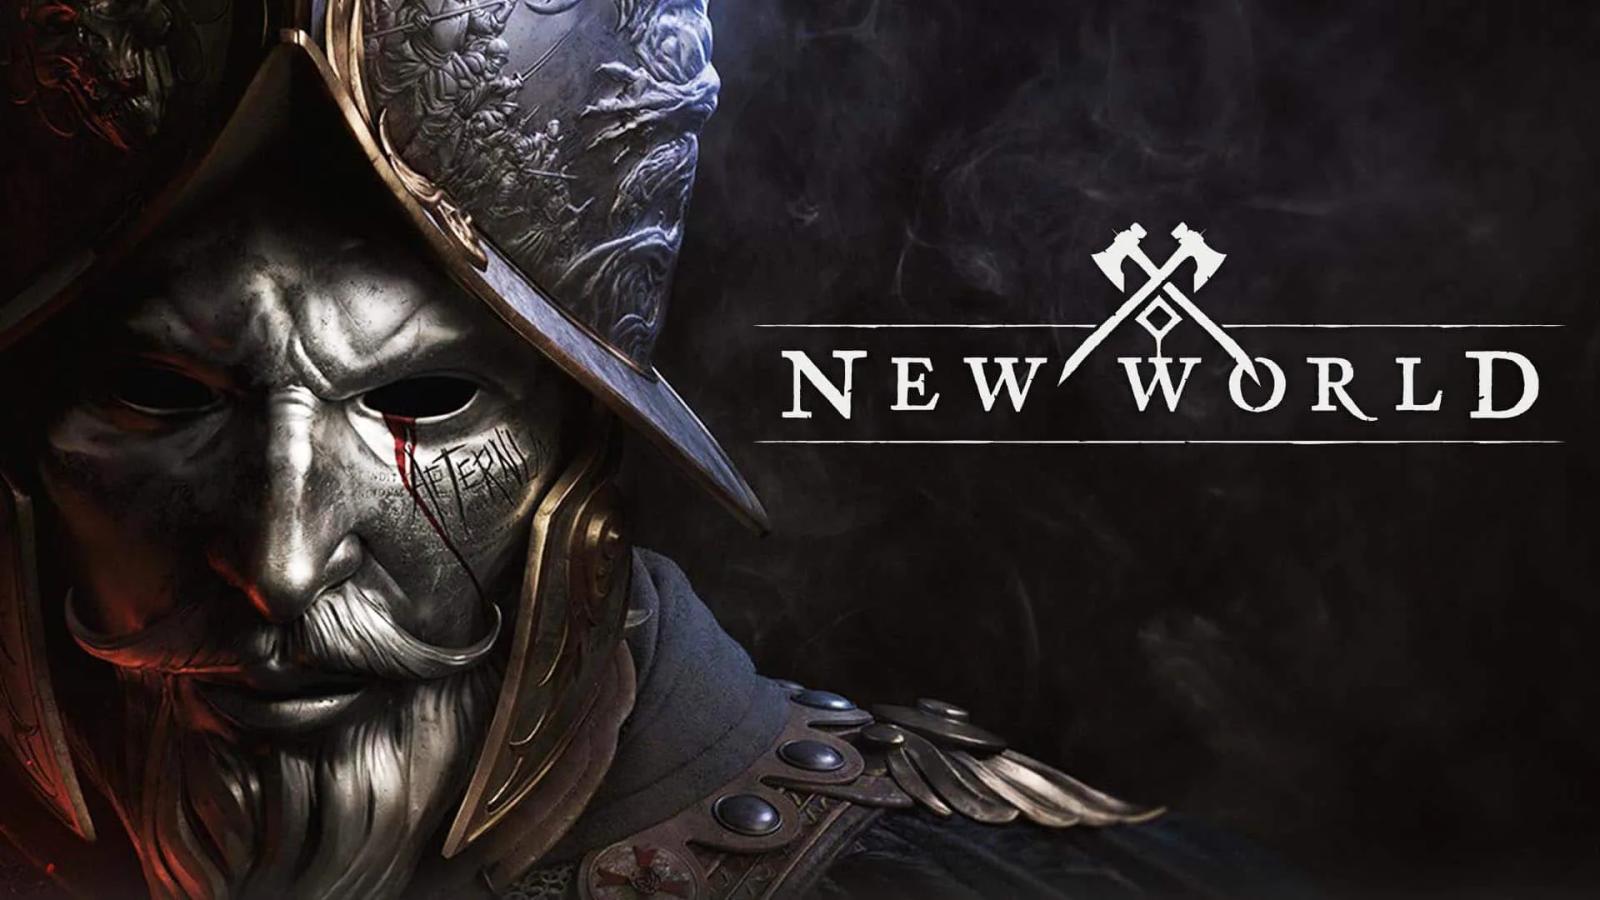 New World logo beside a metal mask.